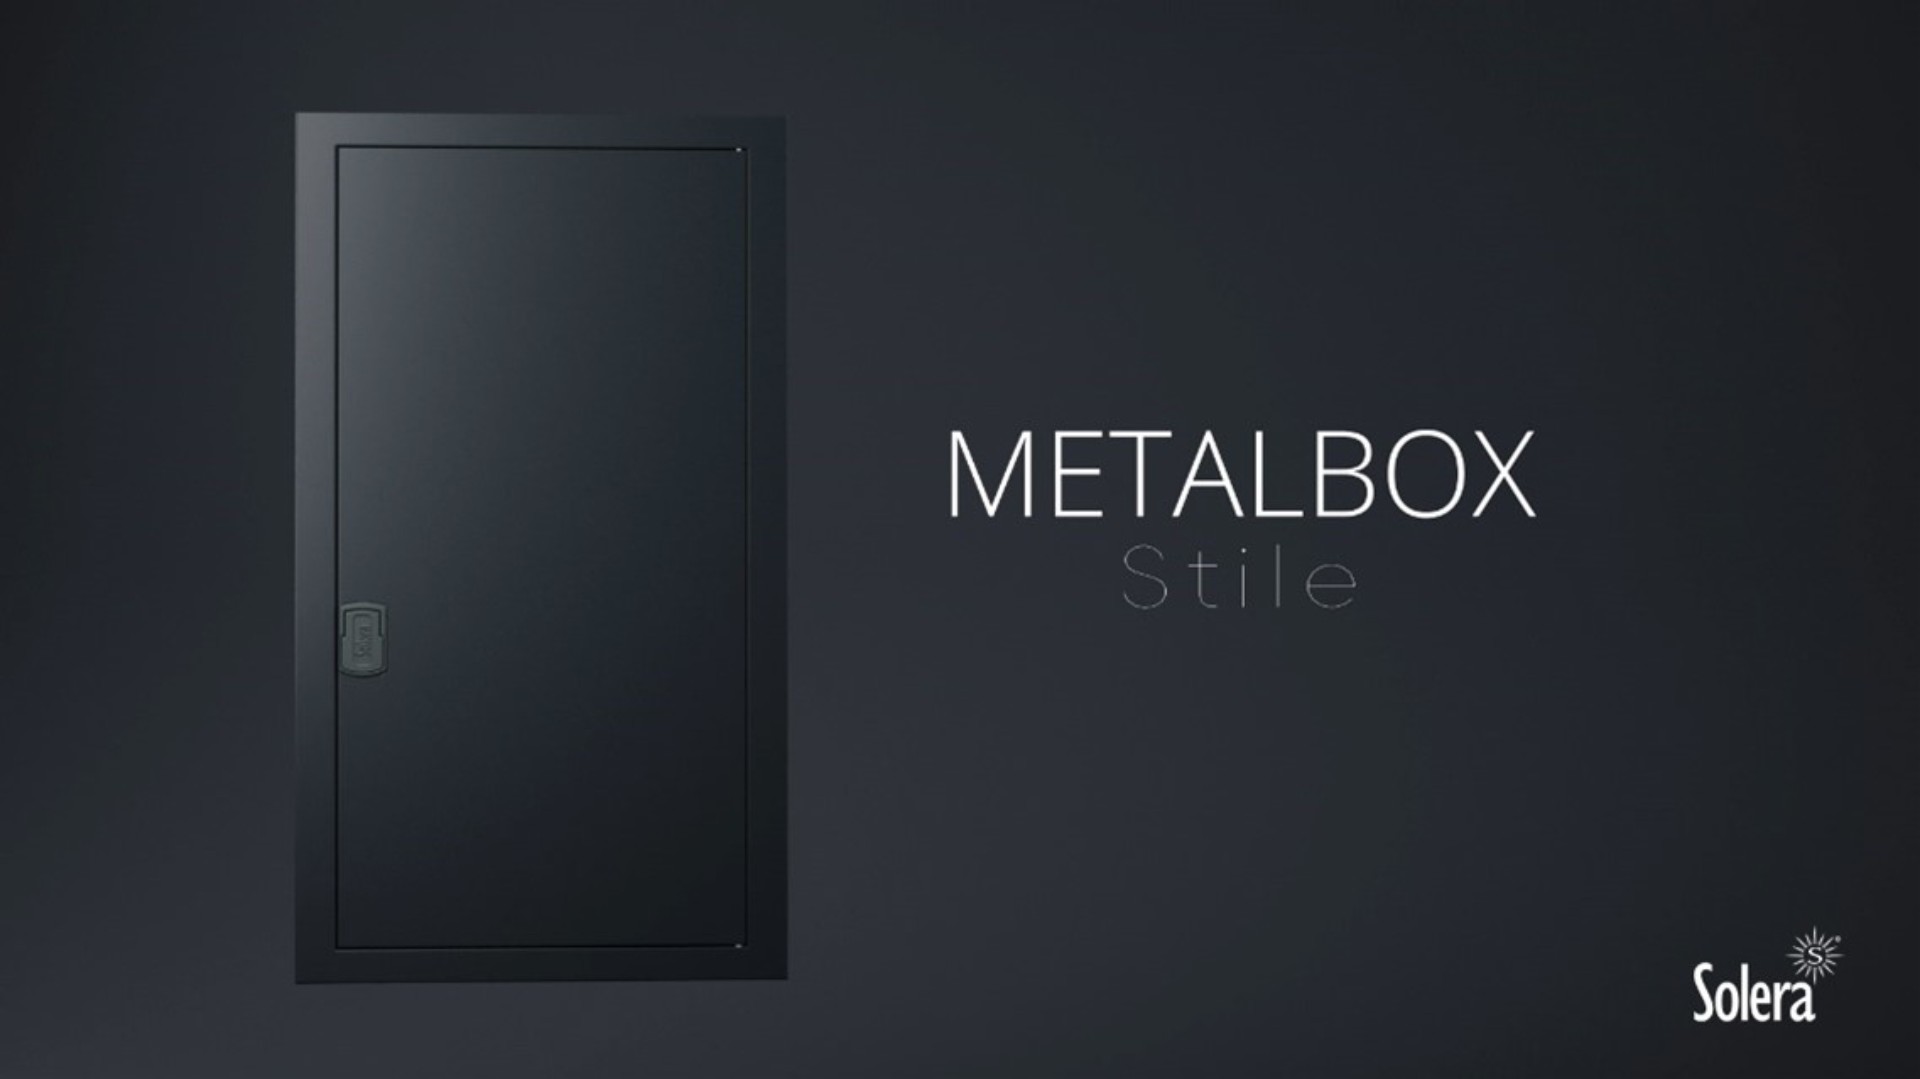 Stile, la nueva gama de la caja de distribución Metalbox